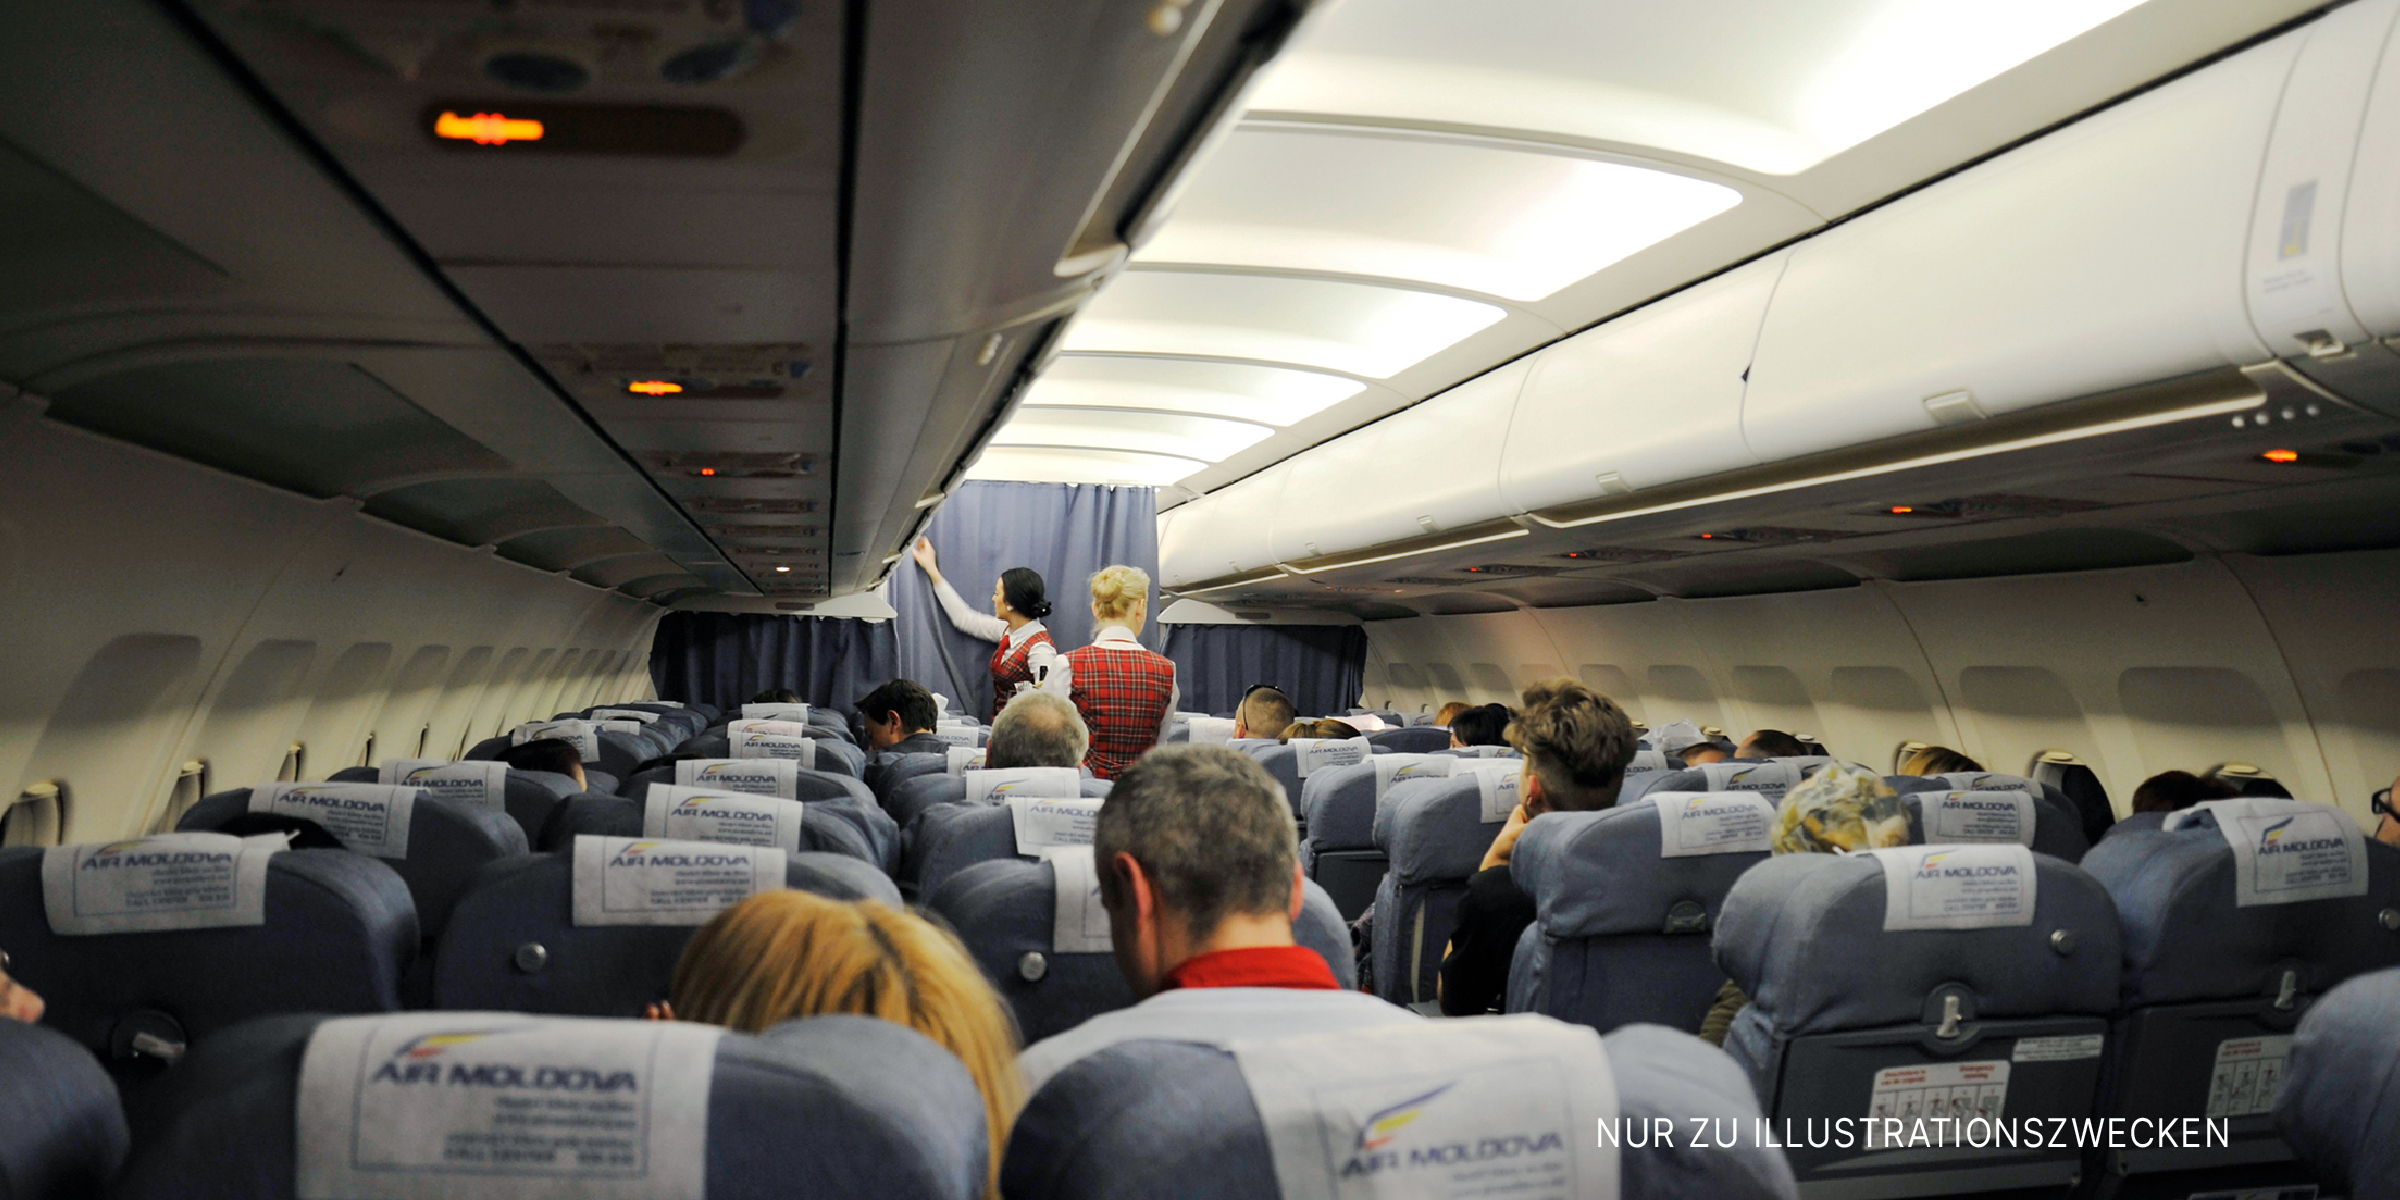 Innenraum eines Flugzeugs mit sitzenden Passagieren und Flugbegleitern | Quelle: Shutterstock